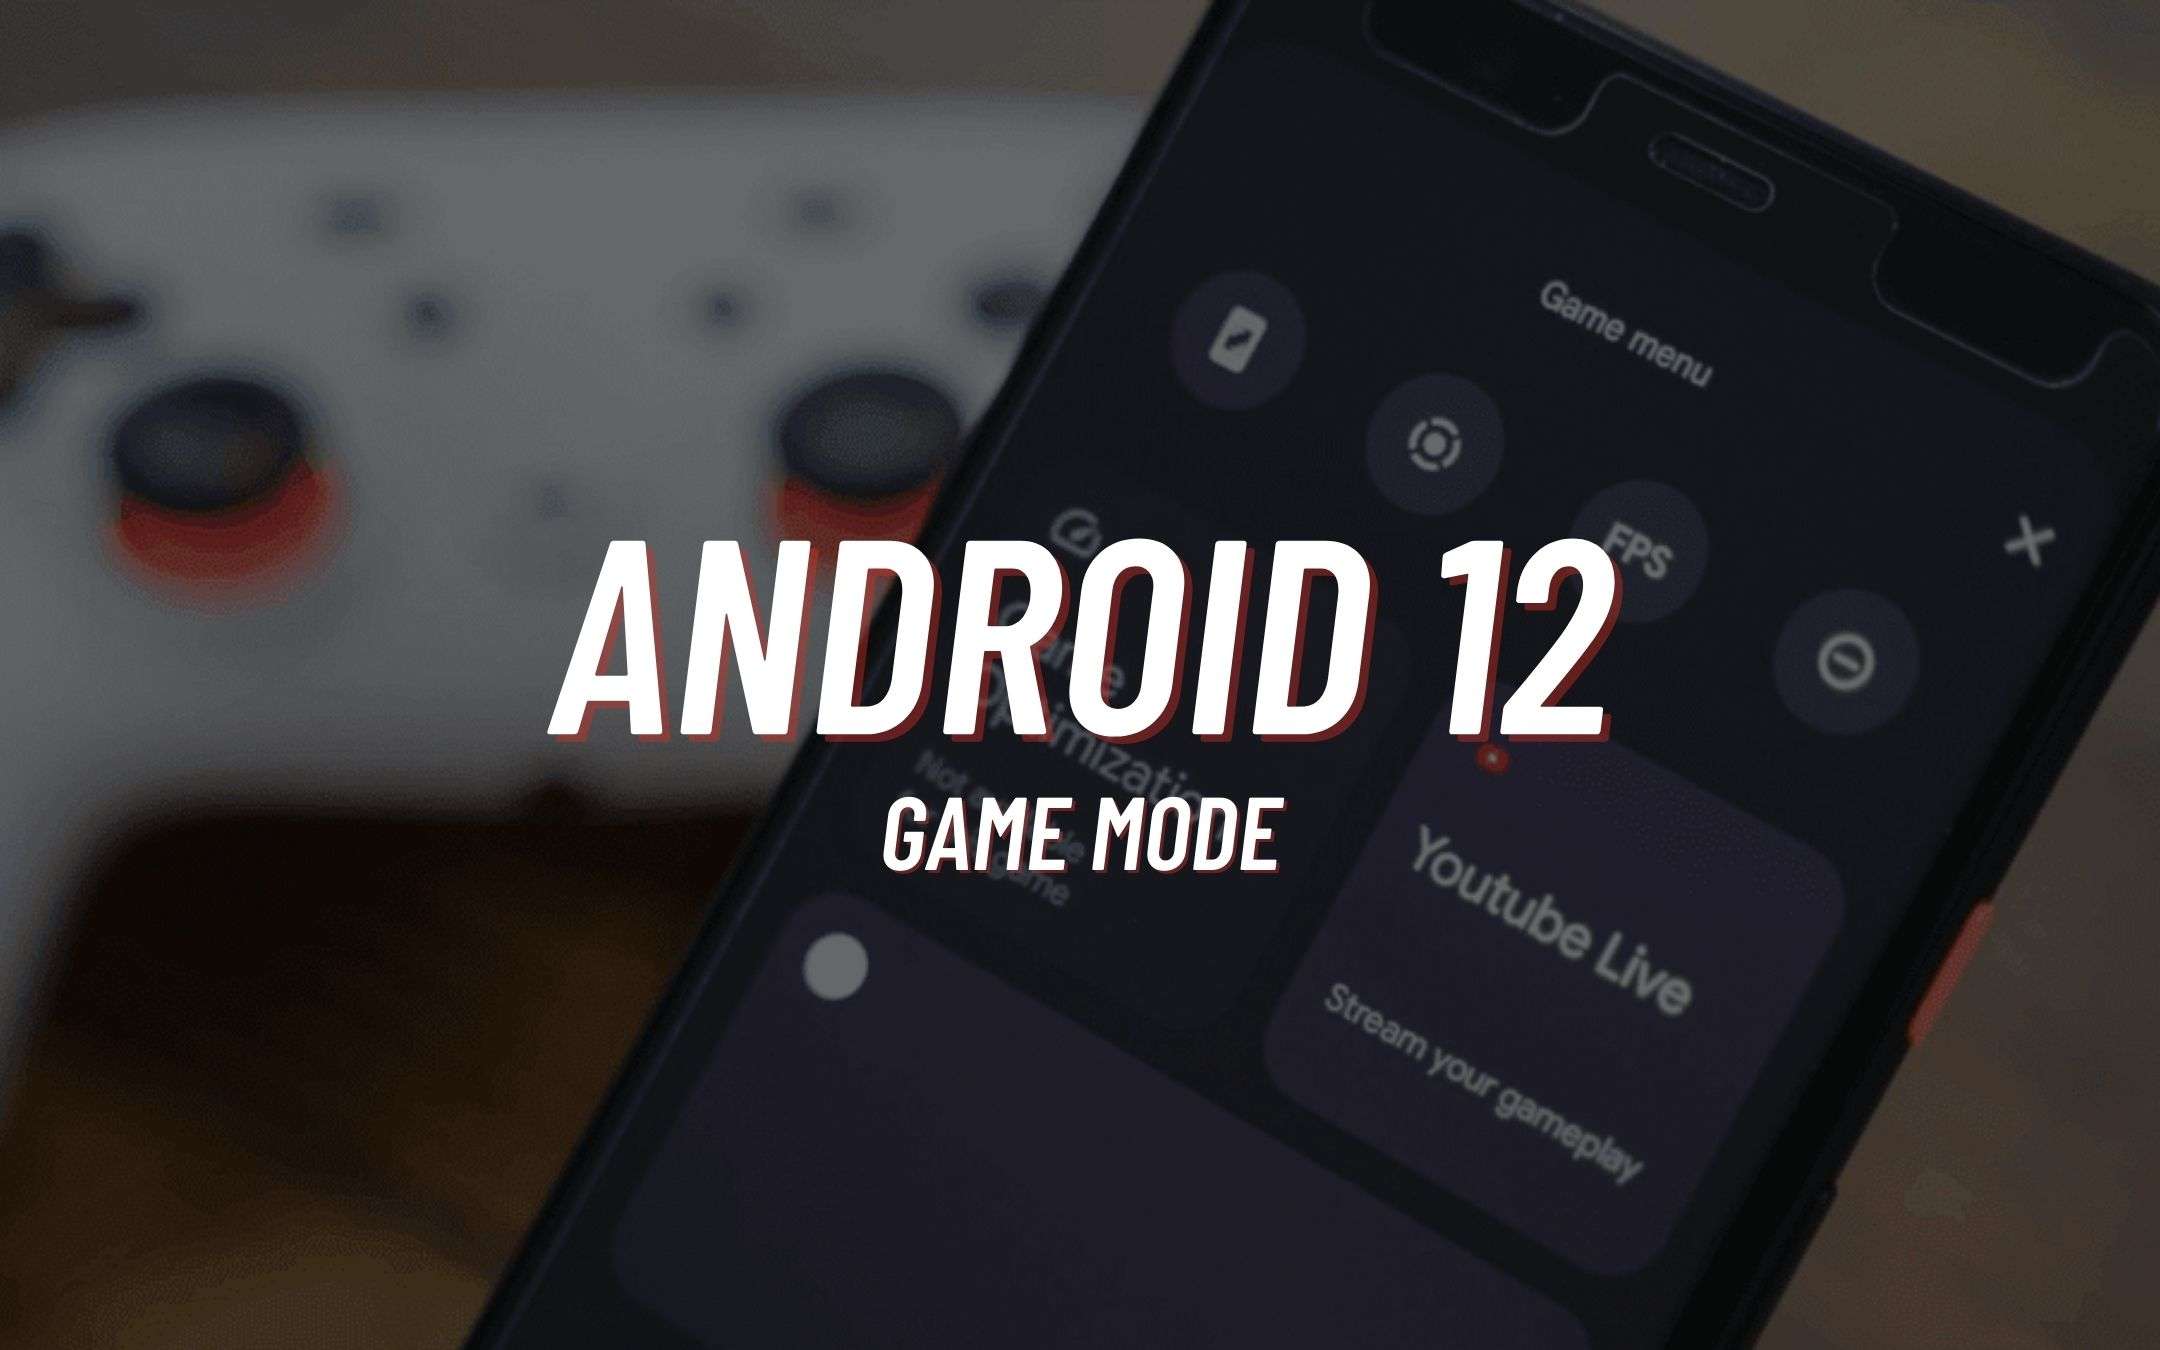 Android 12 avrà una UI pensata per i VIDEOGIOCATORI